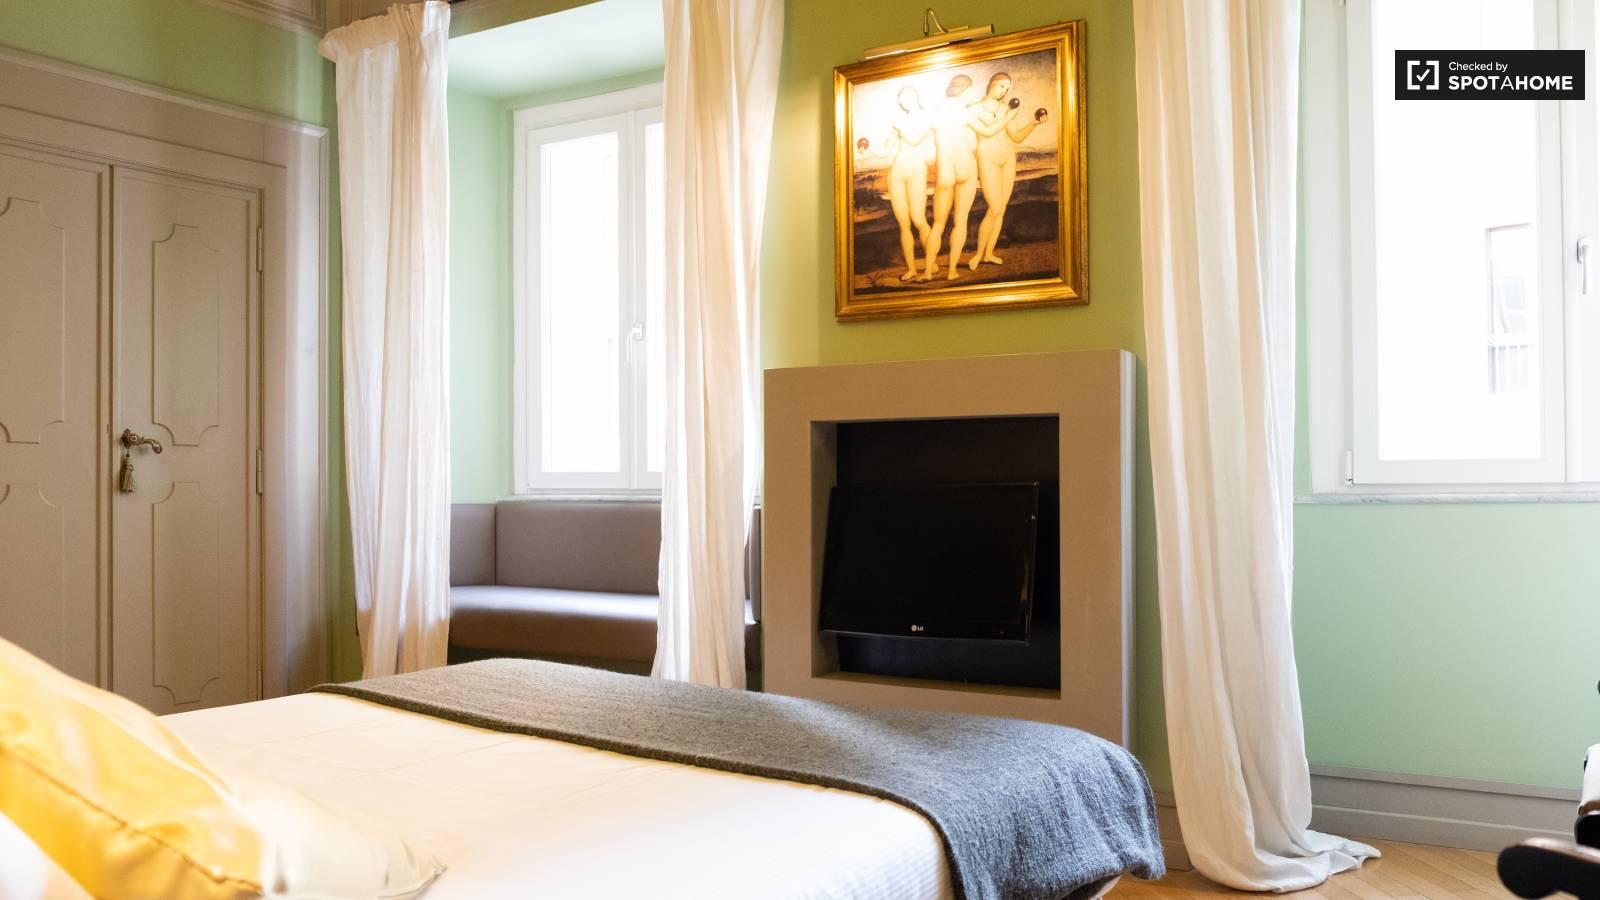 Dormitorio amplio, luminoso y lujoso en Roma